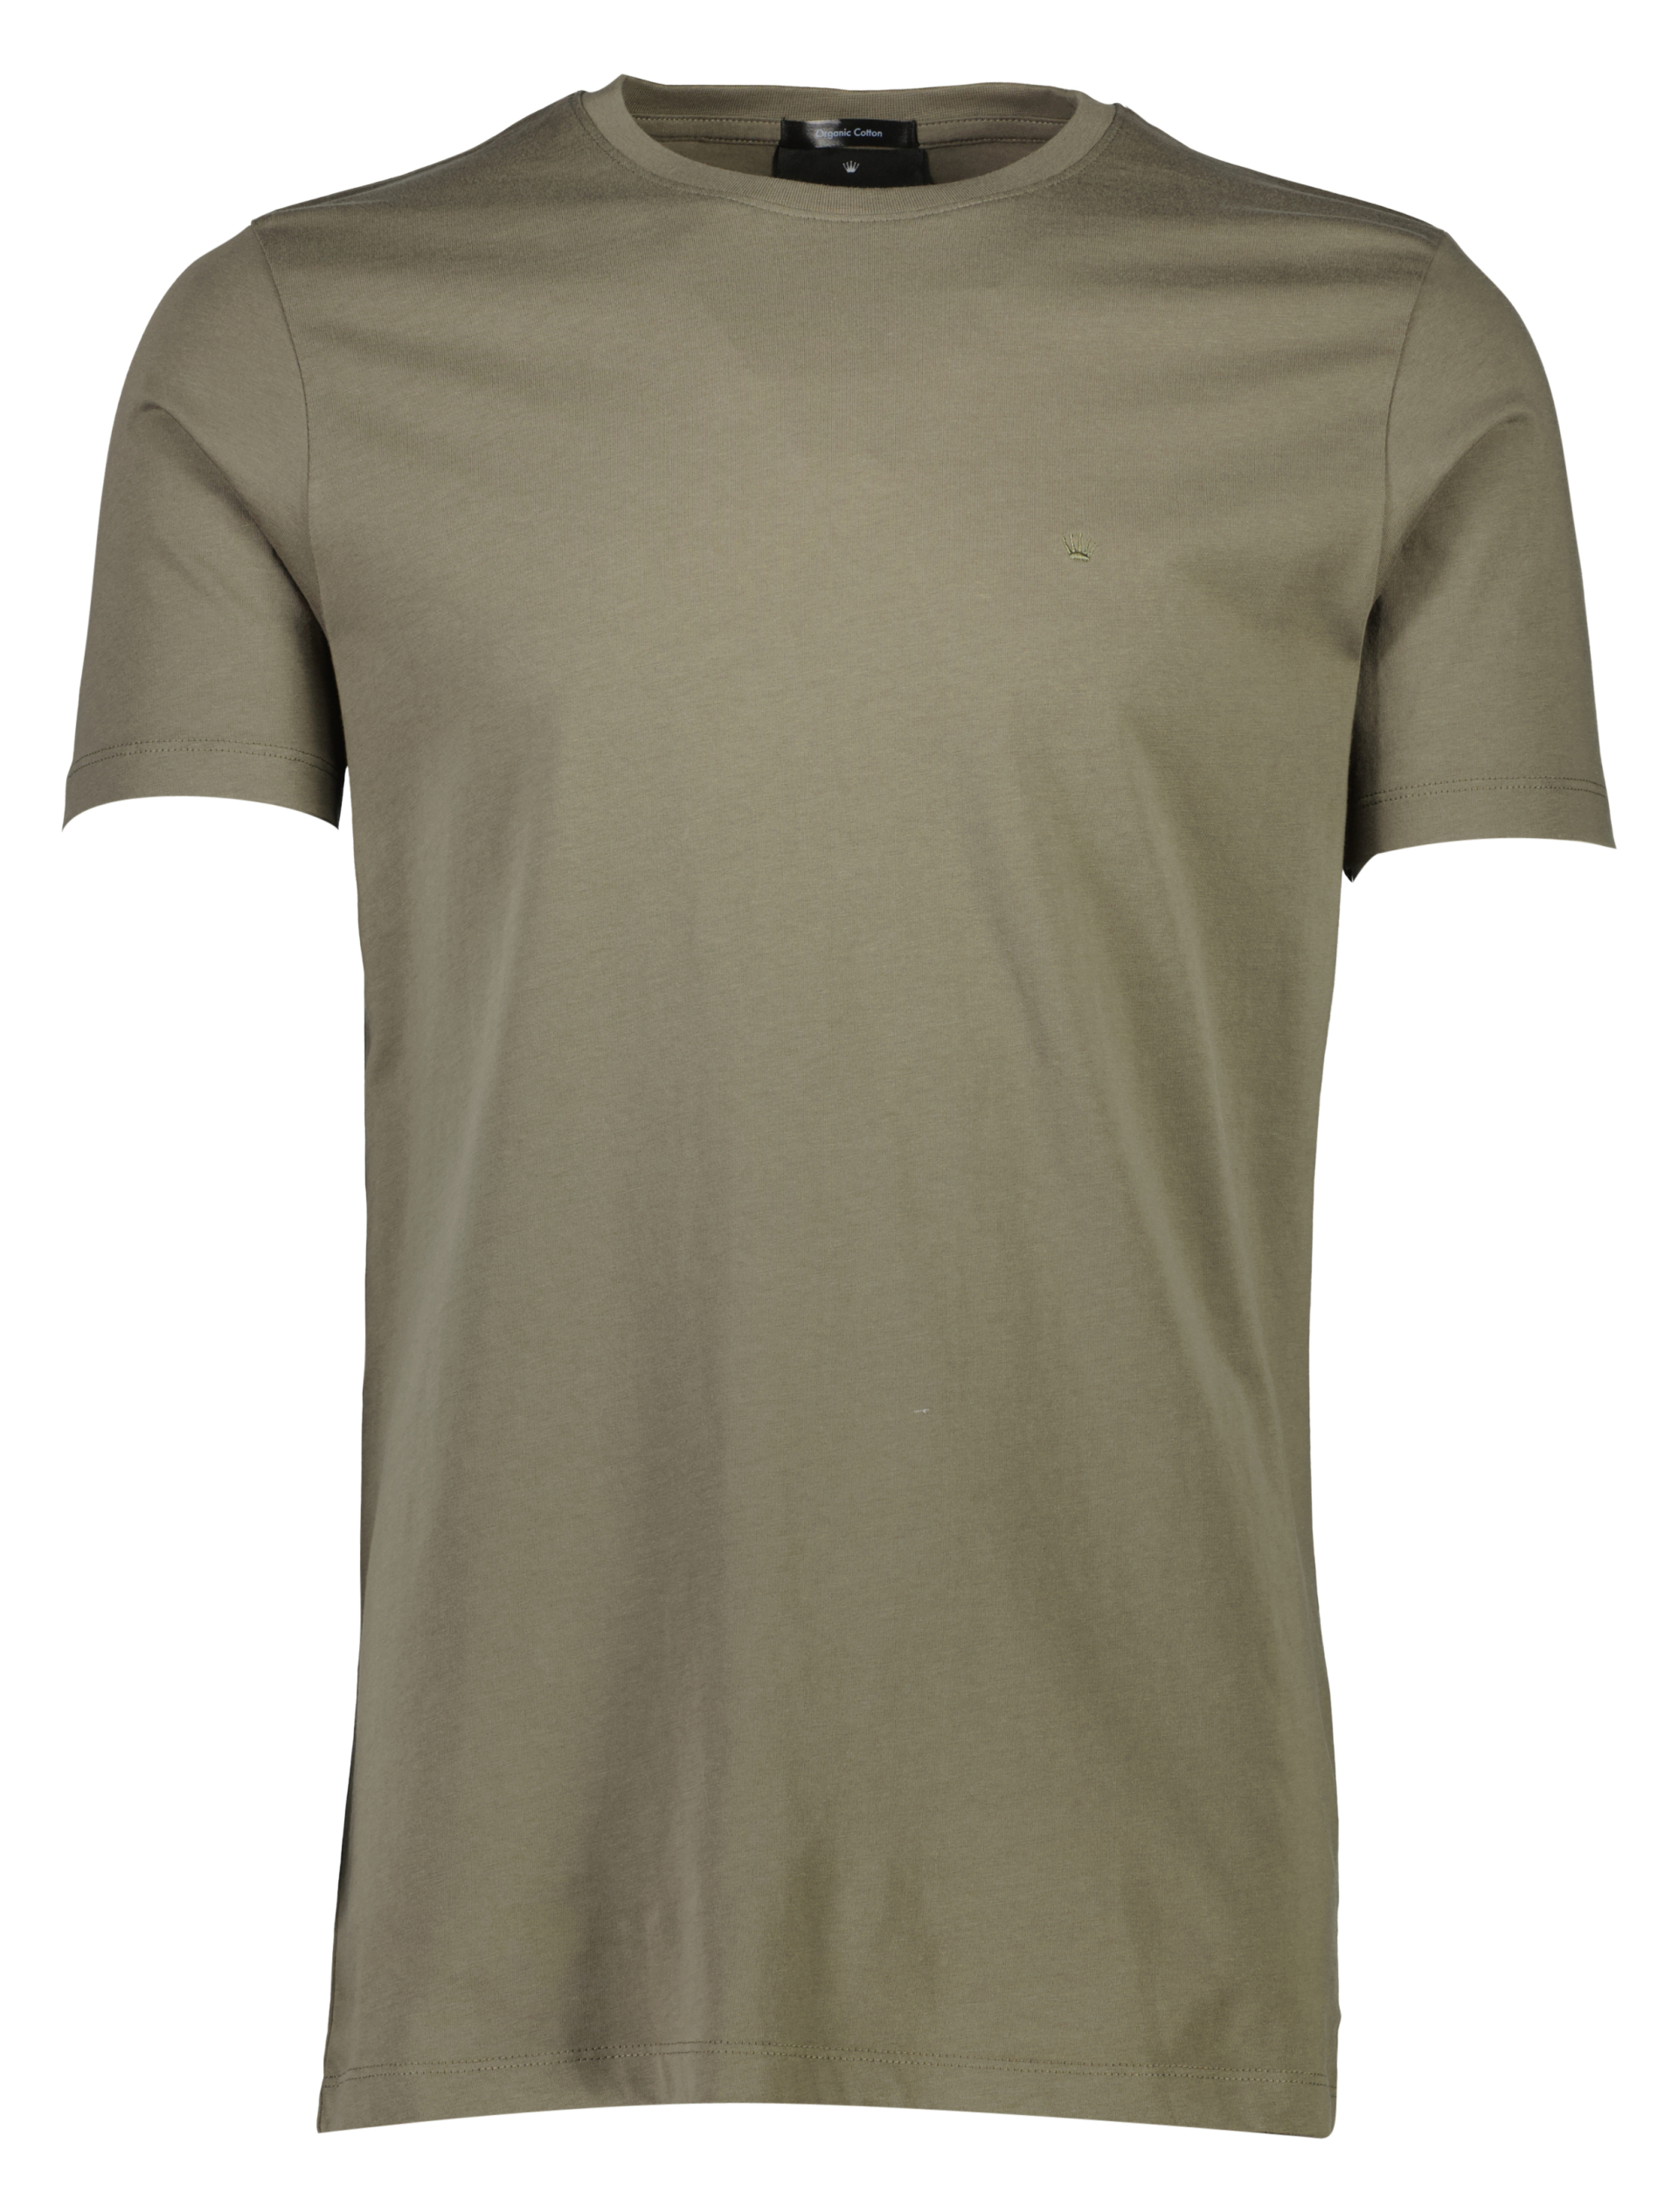 Junk de Luxe T-shirt grøn / lt dusty army